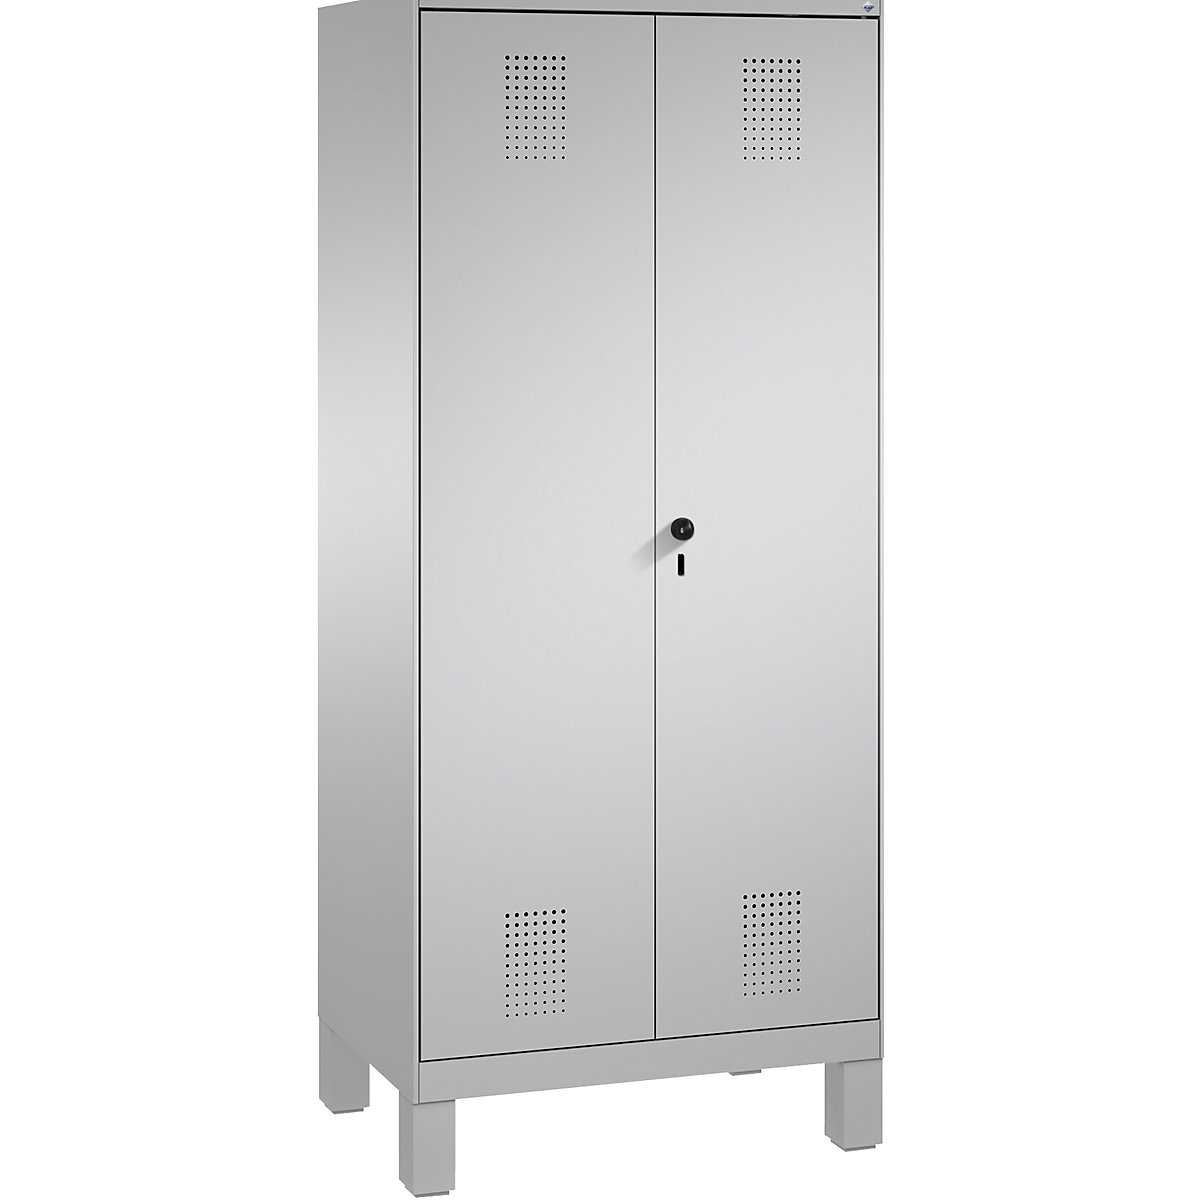 Szafa do przechowywania EVOLO, drzwi zamykane do siebie, z nogami – C+P, 2 przedziały, 8 półek, szer. przedziału 400 mm, biały aluminium / biały aluminium-13